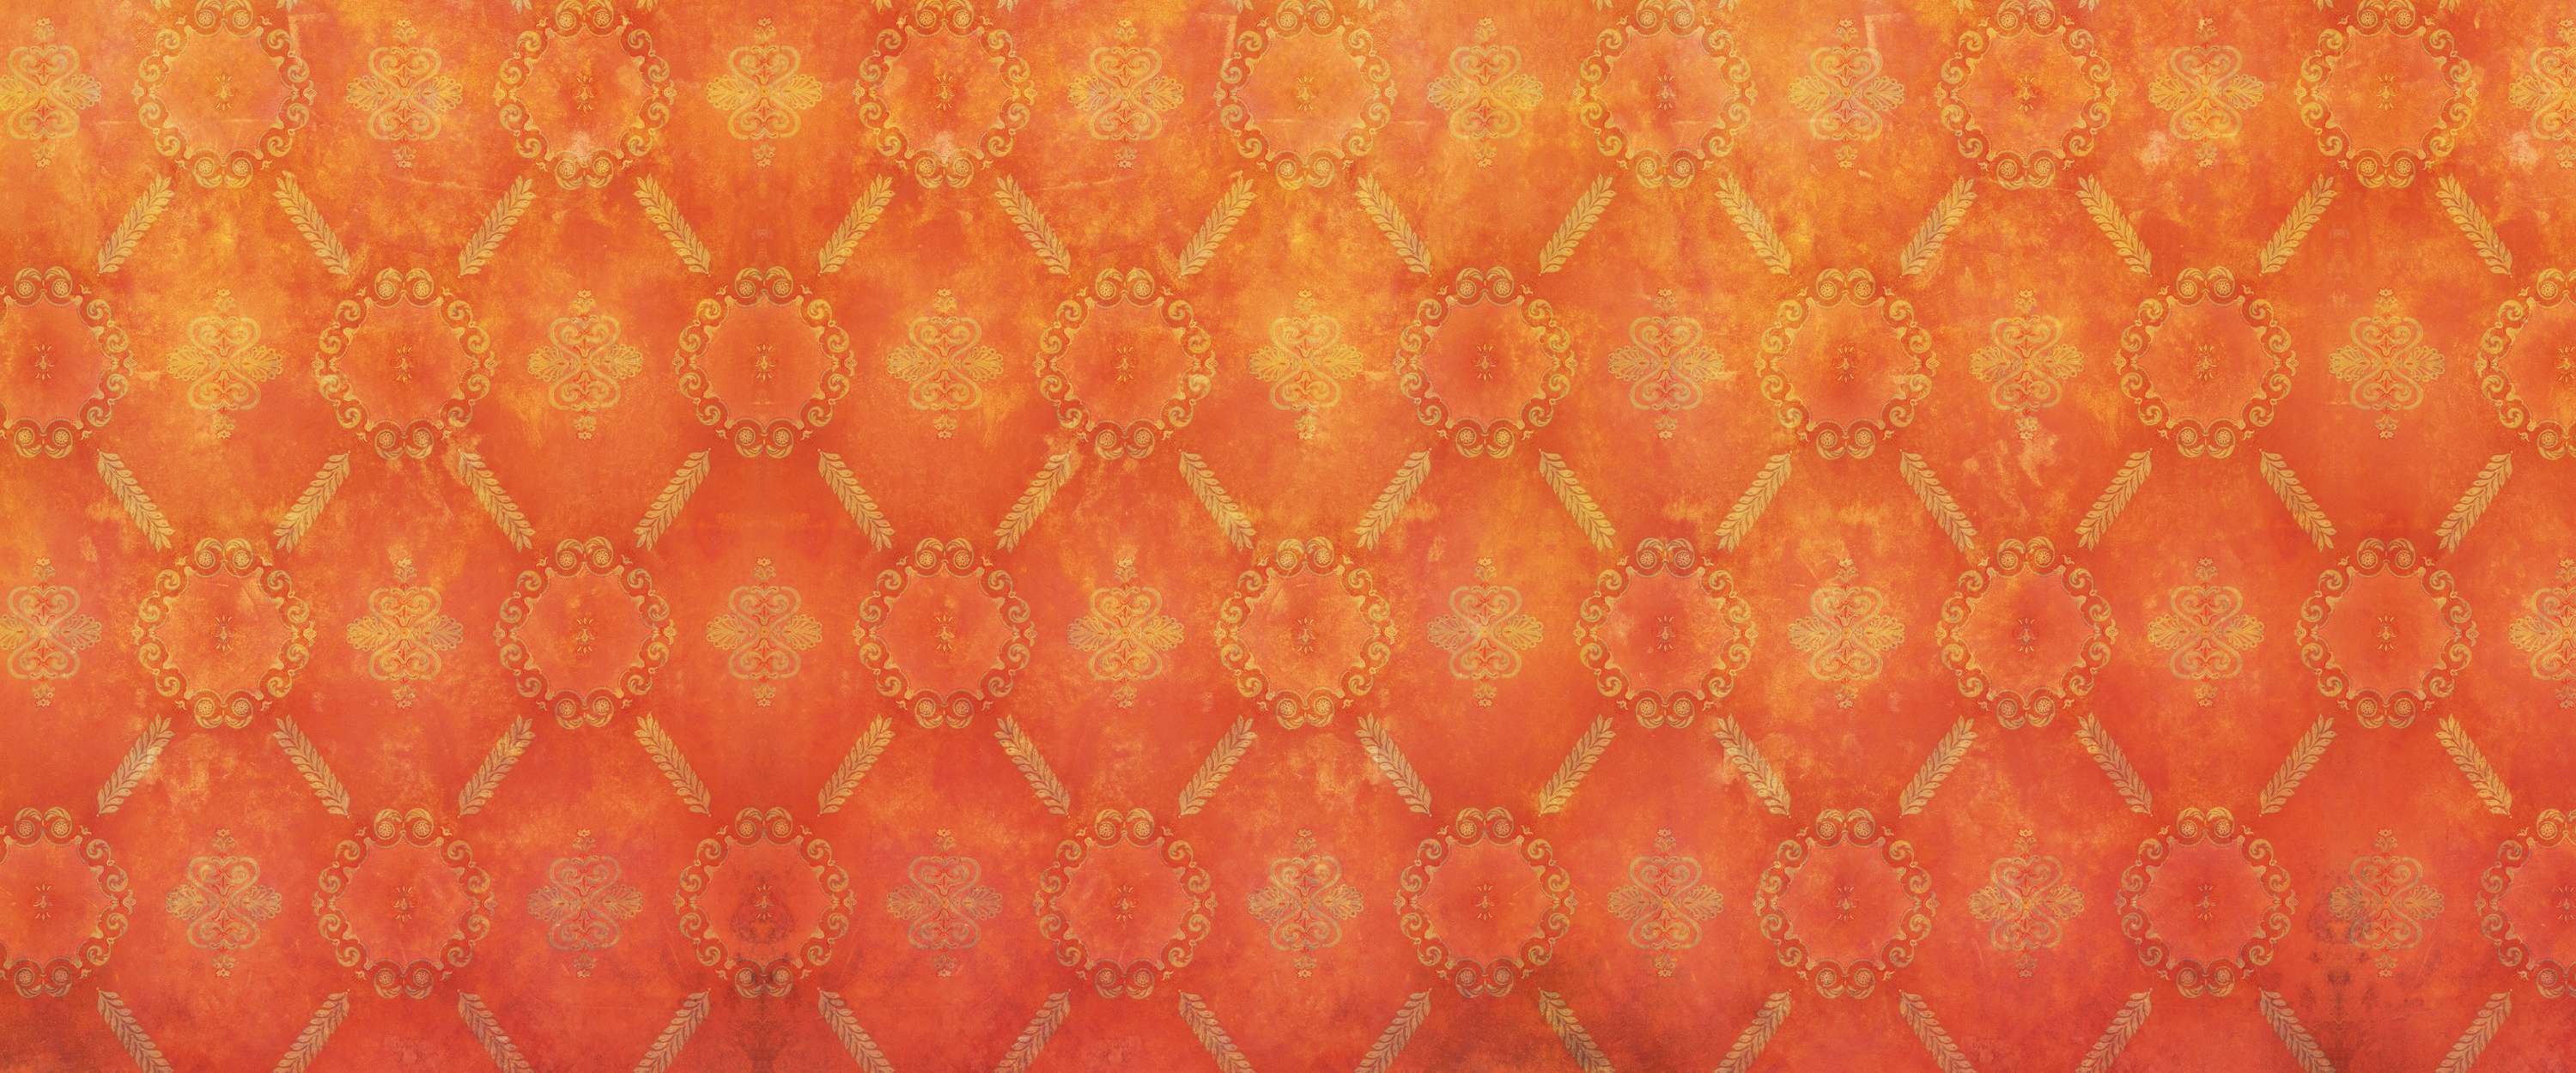             Papel Pintado Naranja con Patrón de Ornamentos y Aspecto Usado
        